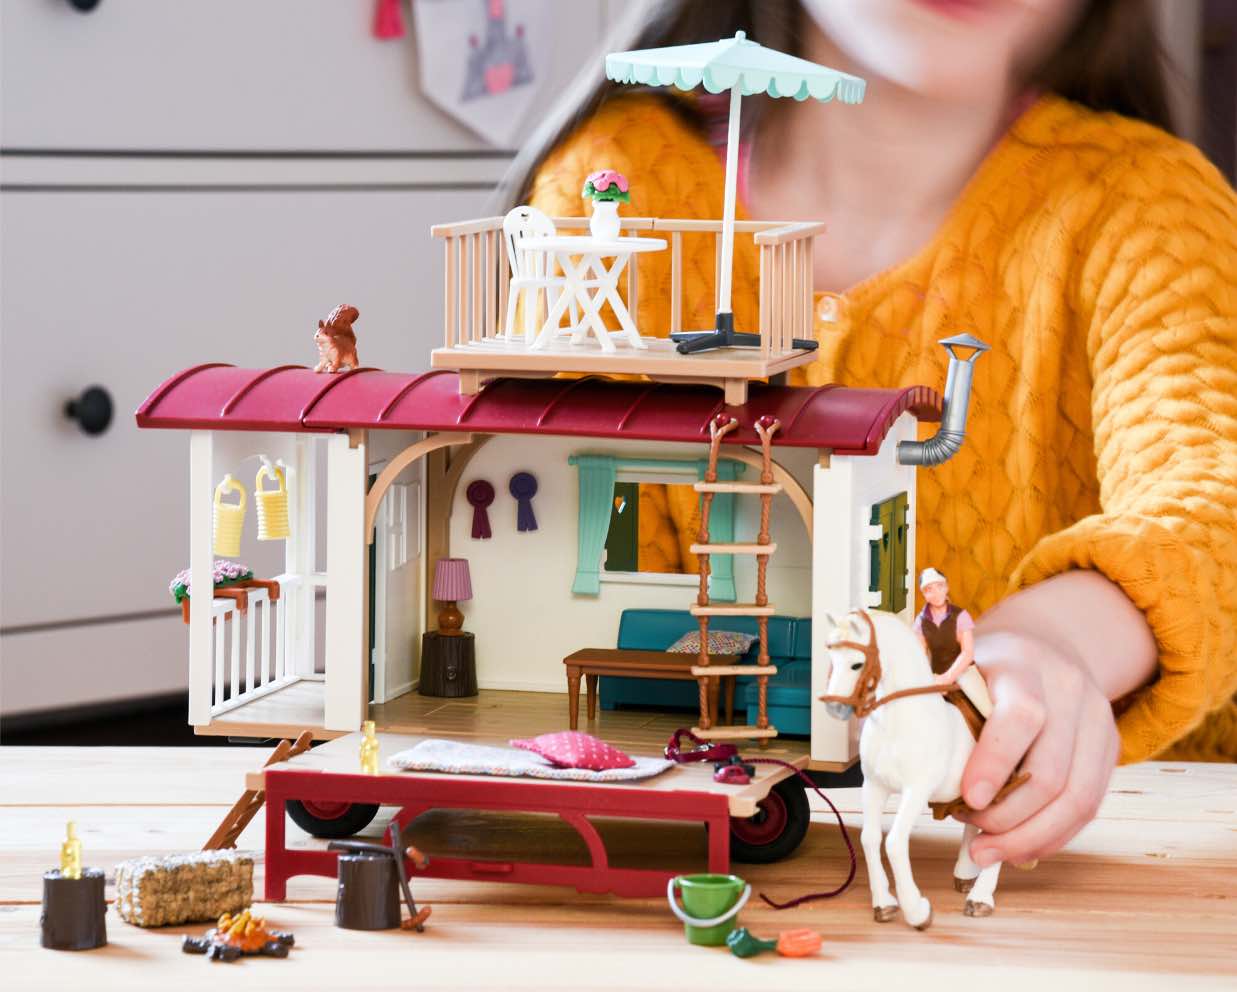 Schleich Wohnwagen für geheime Clubtreffen 42415. Pferde Spielzeug für Kinder, die Pferde lieben. Geschenkidee für kleine Pferdefreunde.